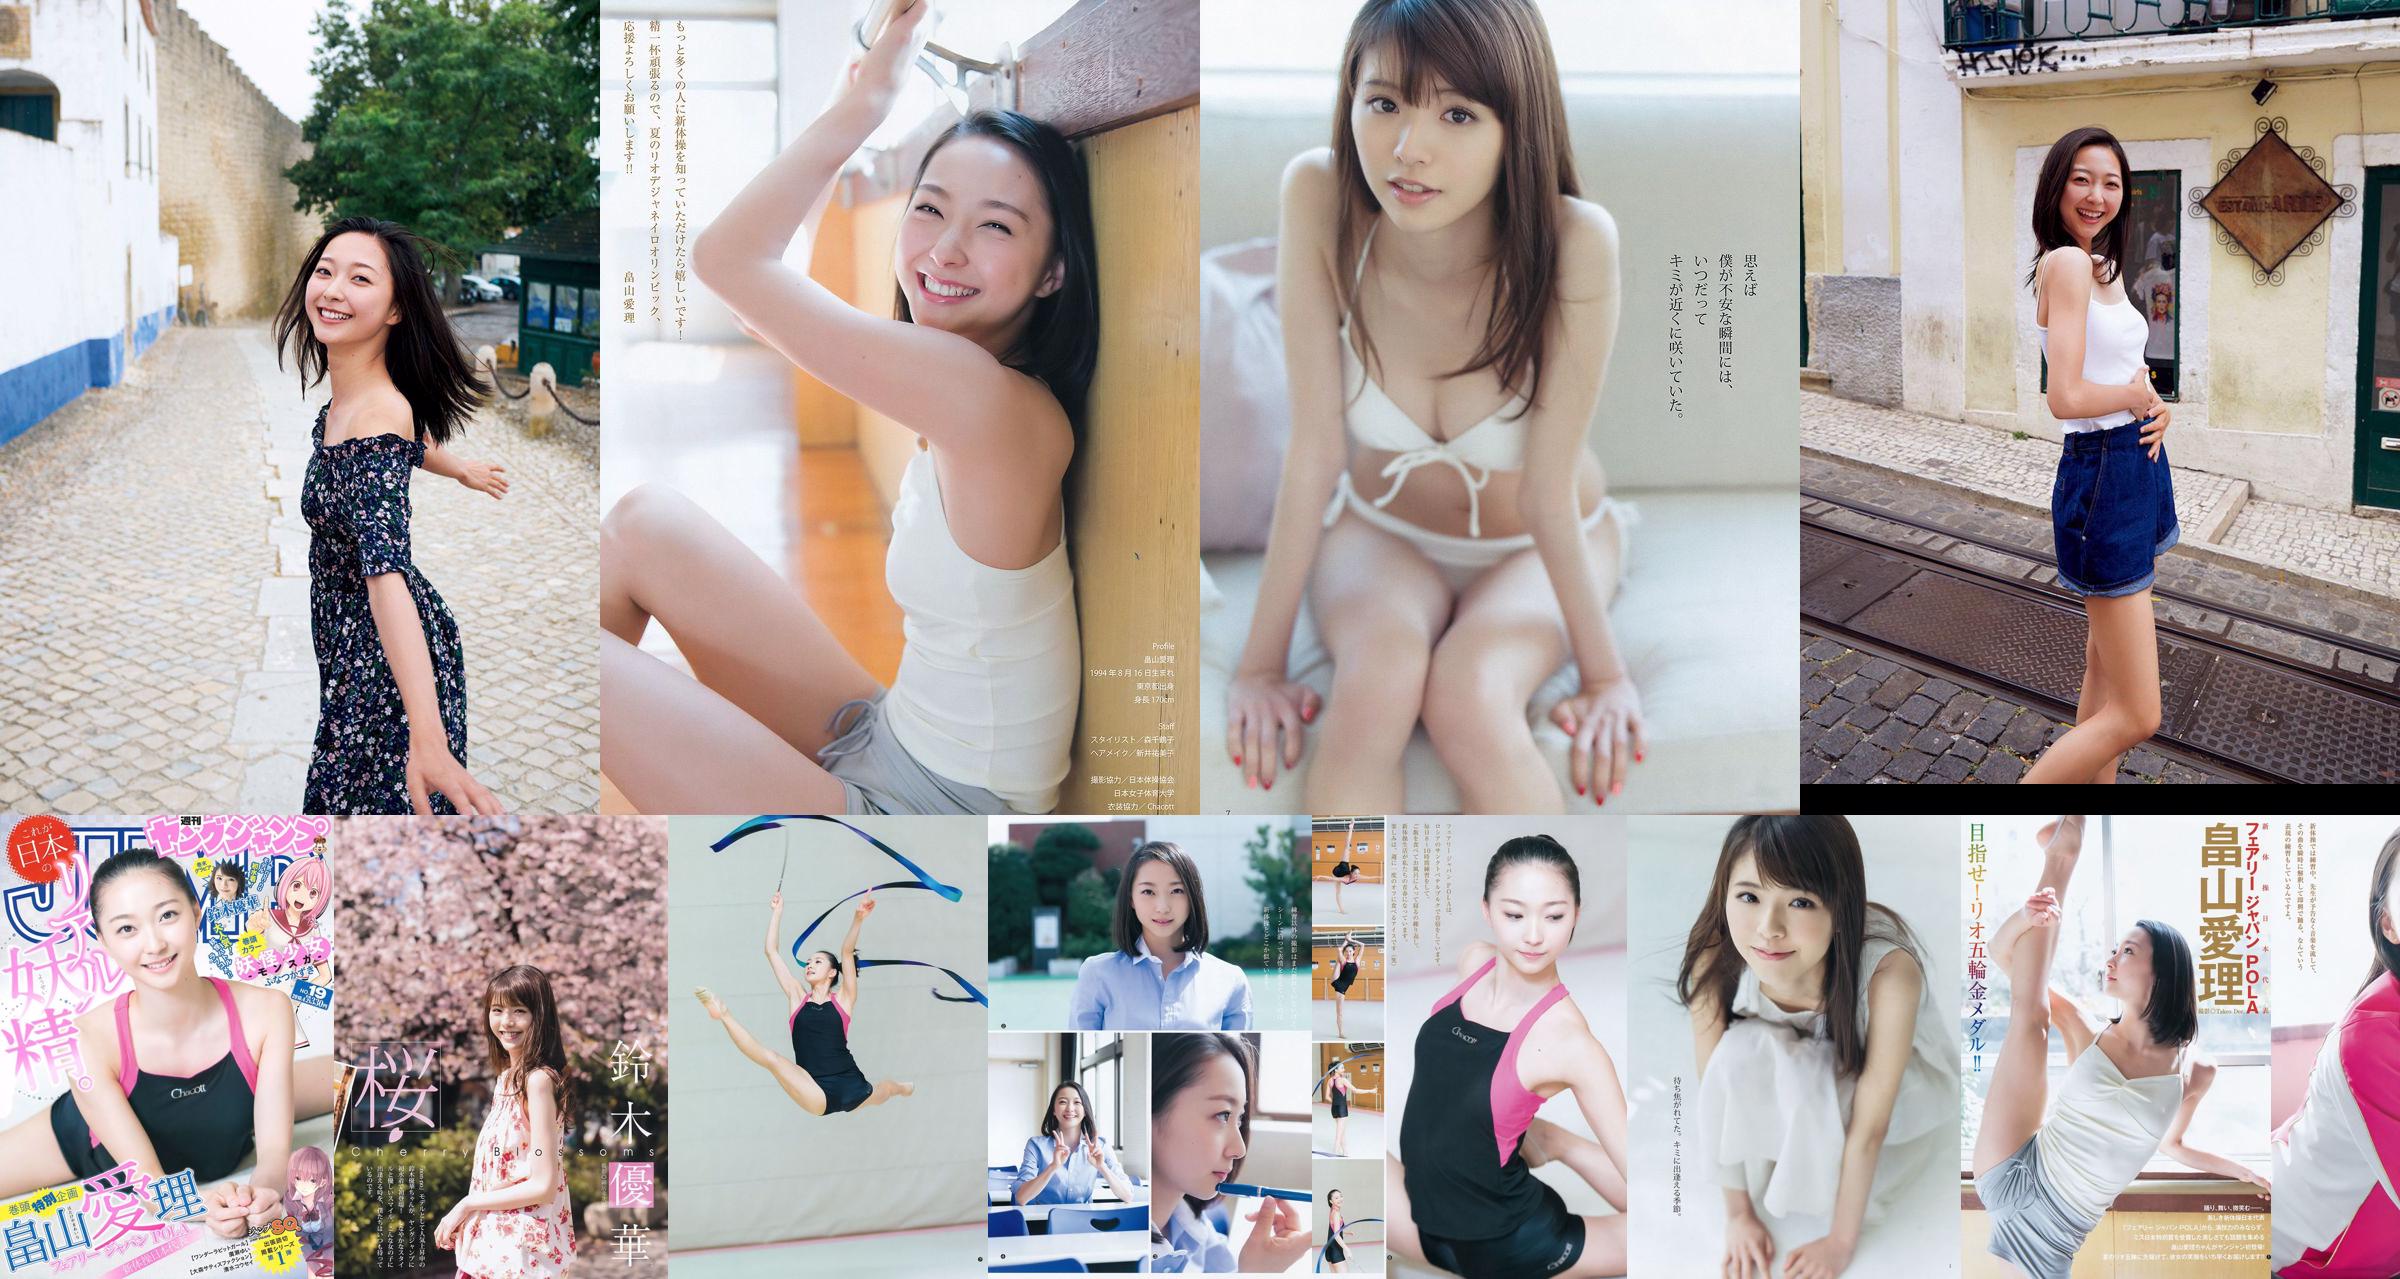 [ENTAME] Mai Shiraishi Nanase Nishino Rena Shimada Yui Takano Ausgabe März 2014 Foto No.a86460 Seite 2